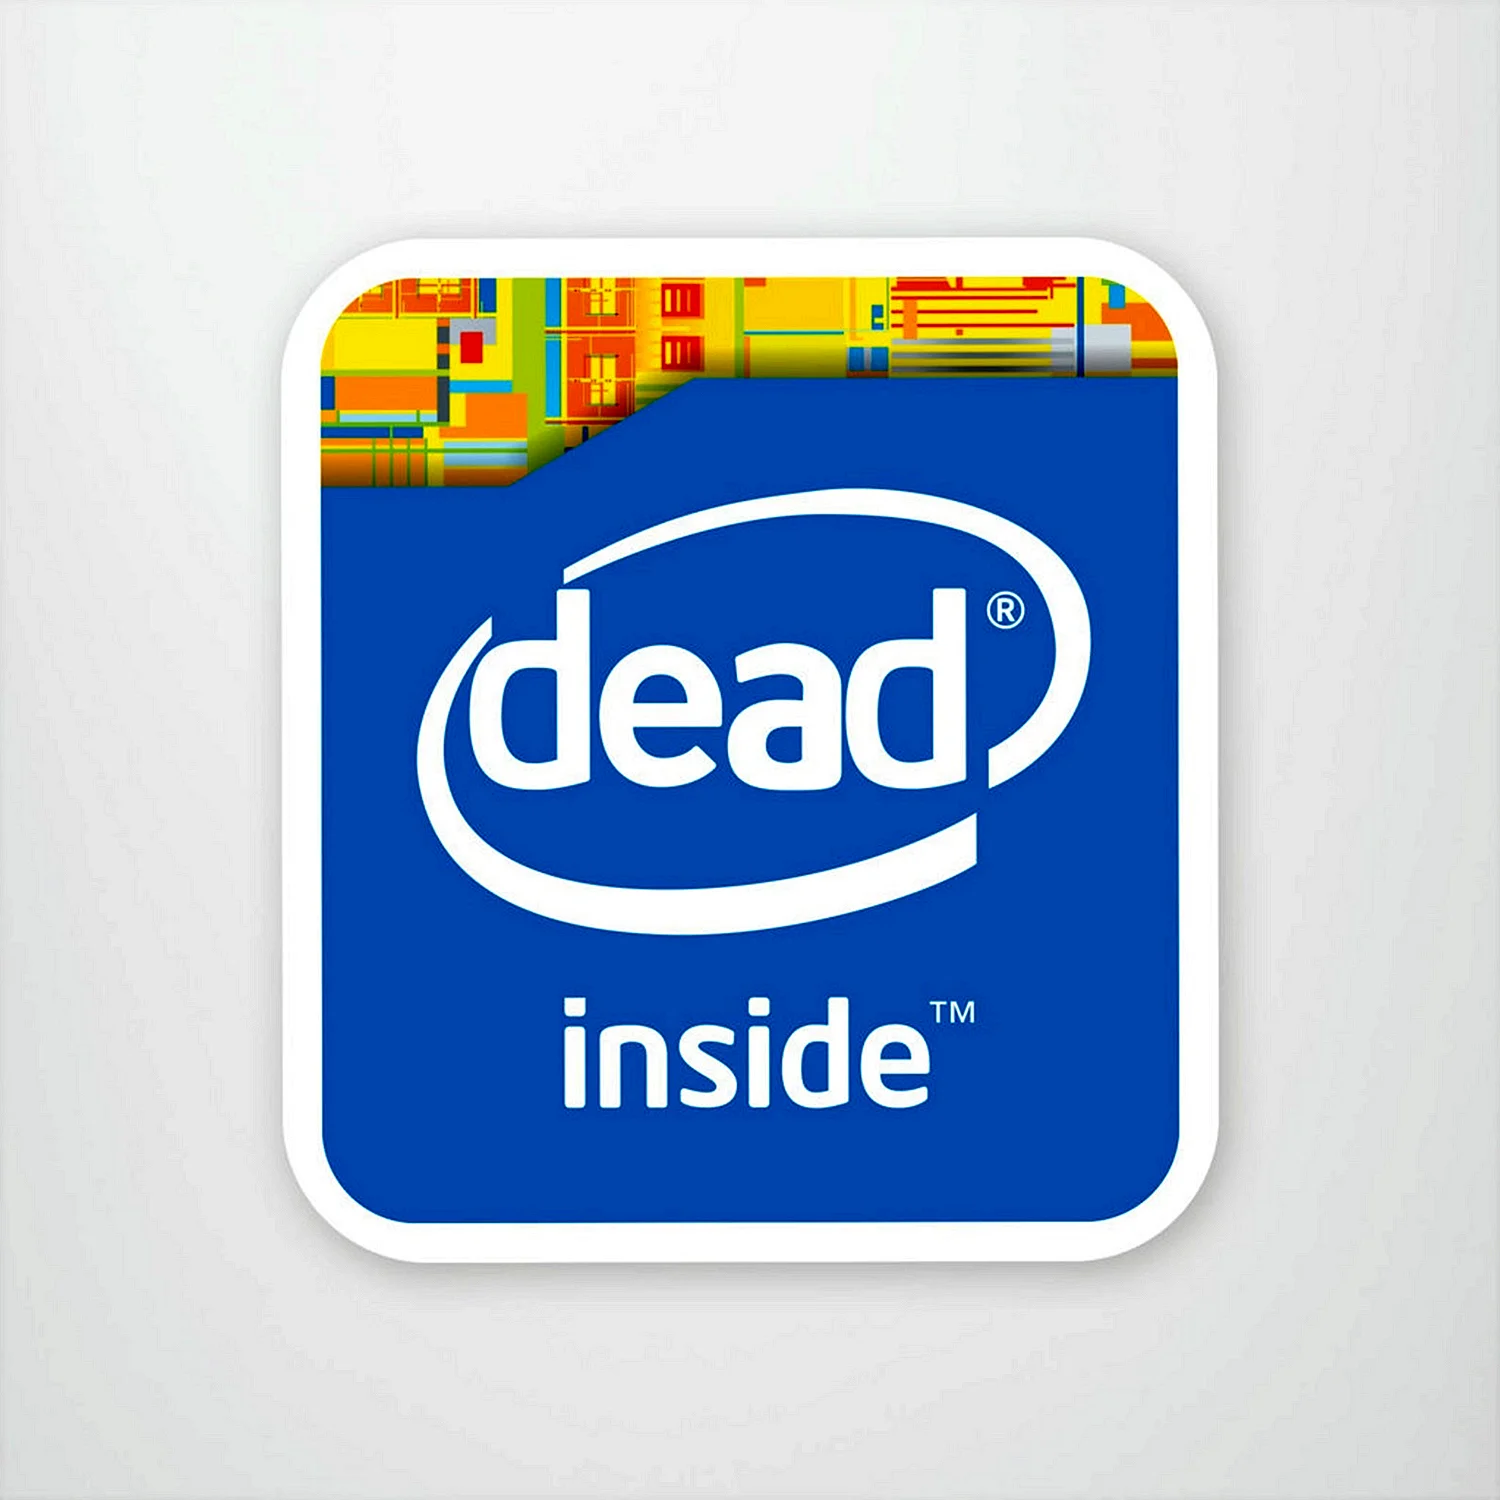 Dead inside Intel